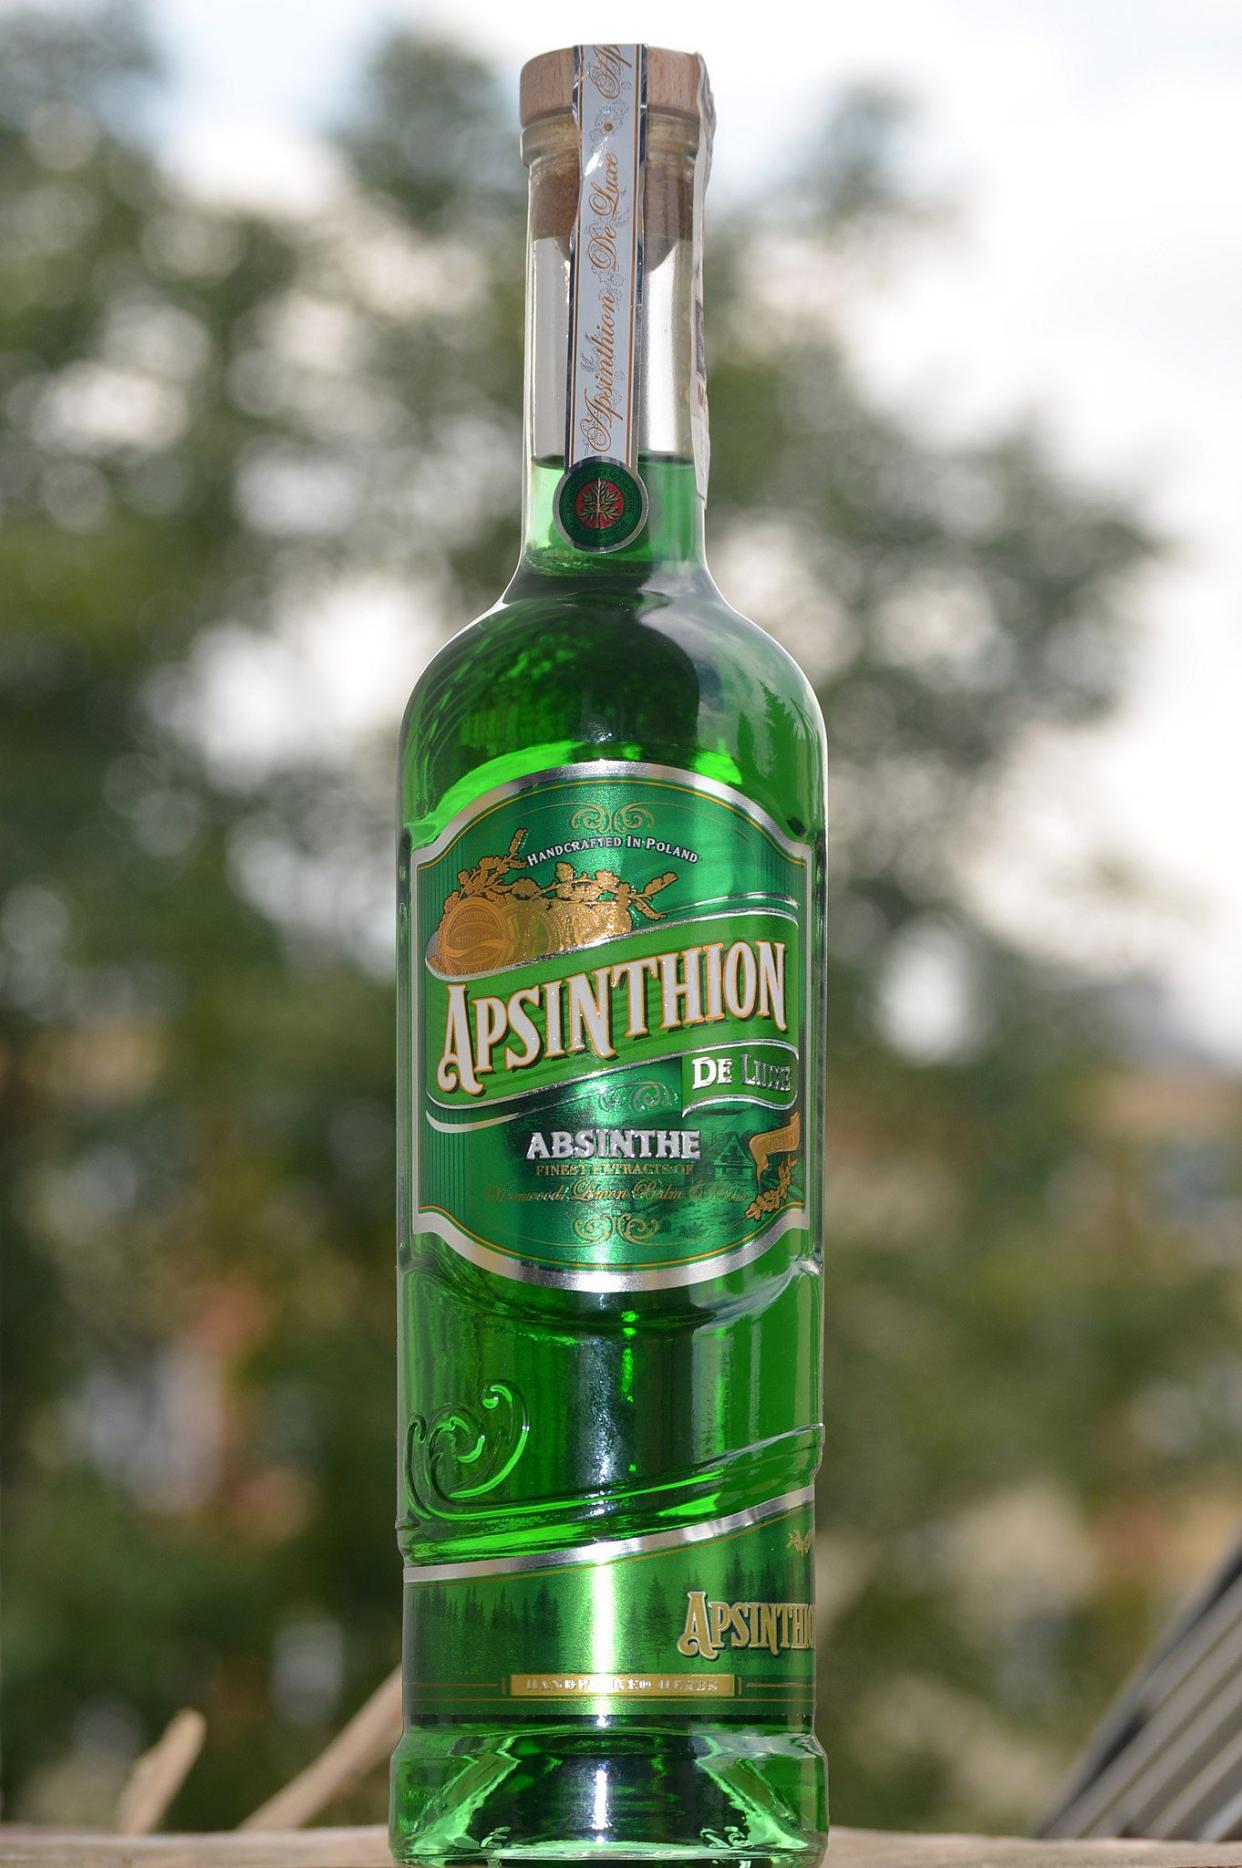 Apsinthion absinthe bottle